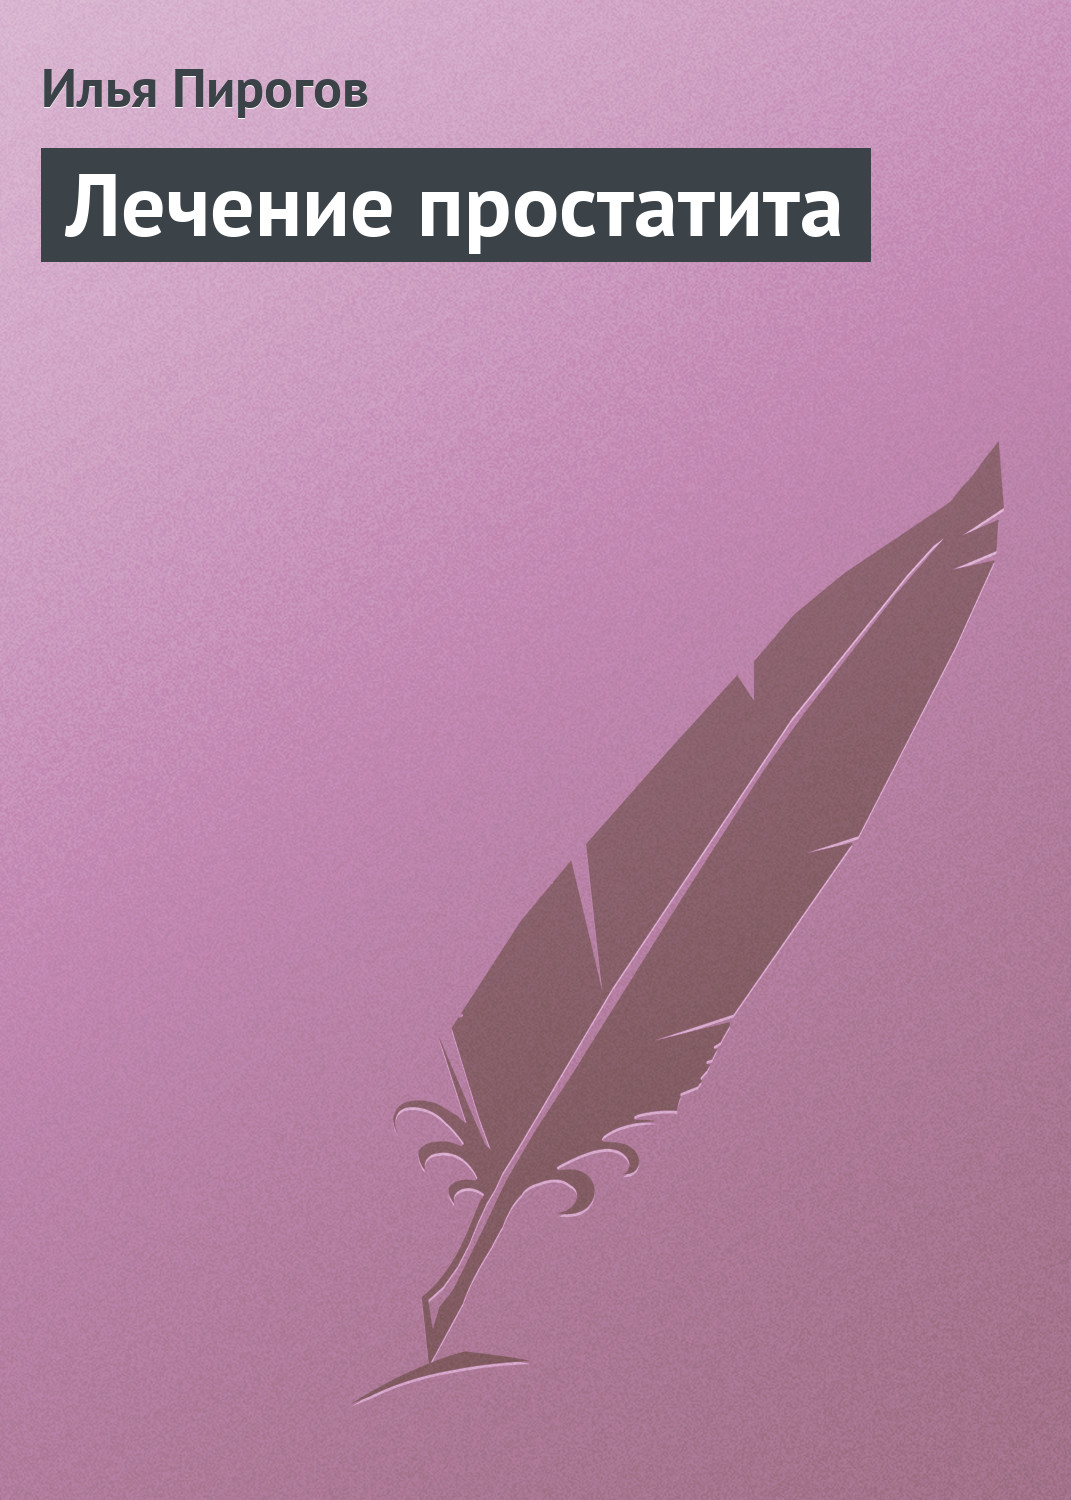 Илья Пирогов - «Лечение простатита»